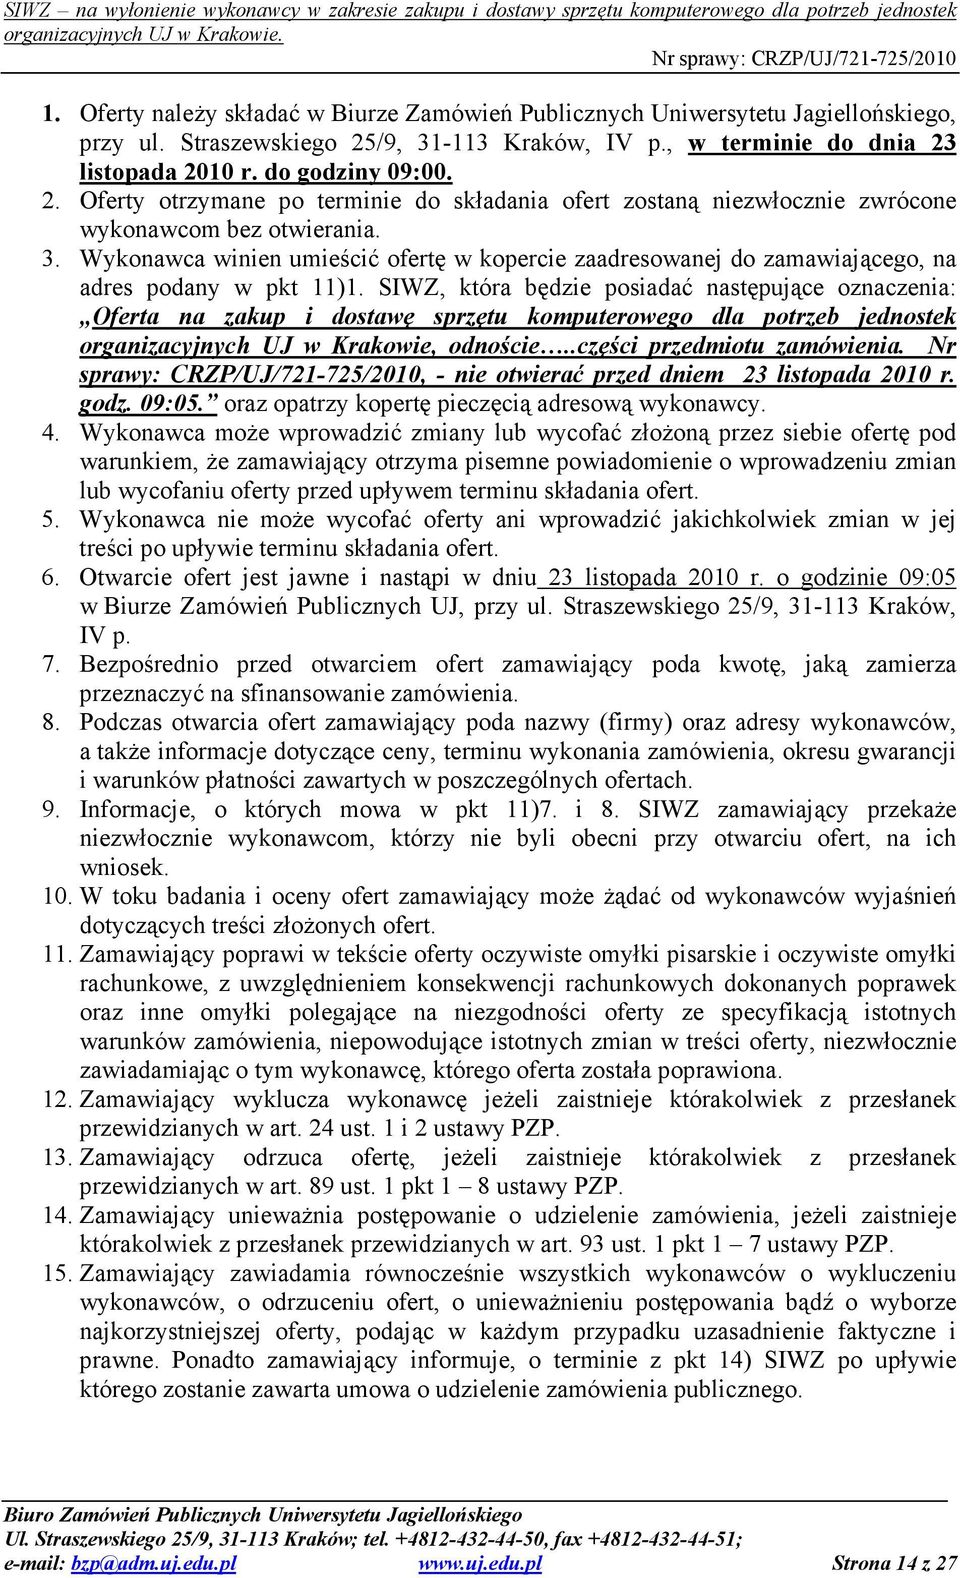 SIWZ, która będzie posiadać następujące oznaczenia: Oferta na zakup i dostawę sprzętu komputerowego dla potrzeb jednostek organizacyjnych UJ w Krakowie, odnoście..części przedmiotu zamówienia.